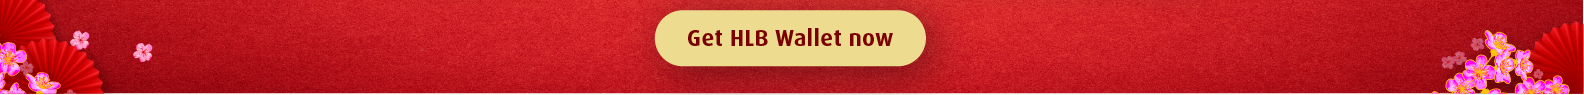 Get HLB wallet now